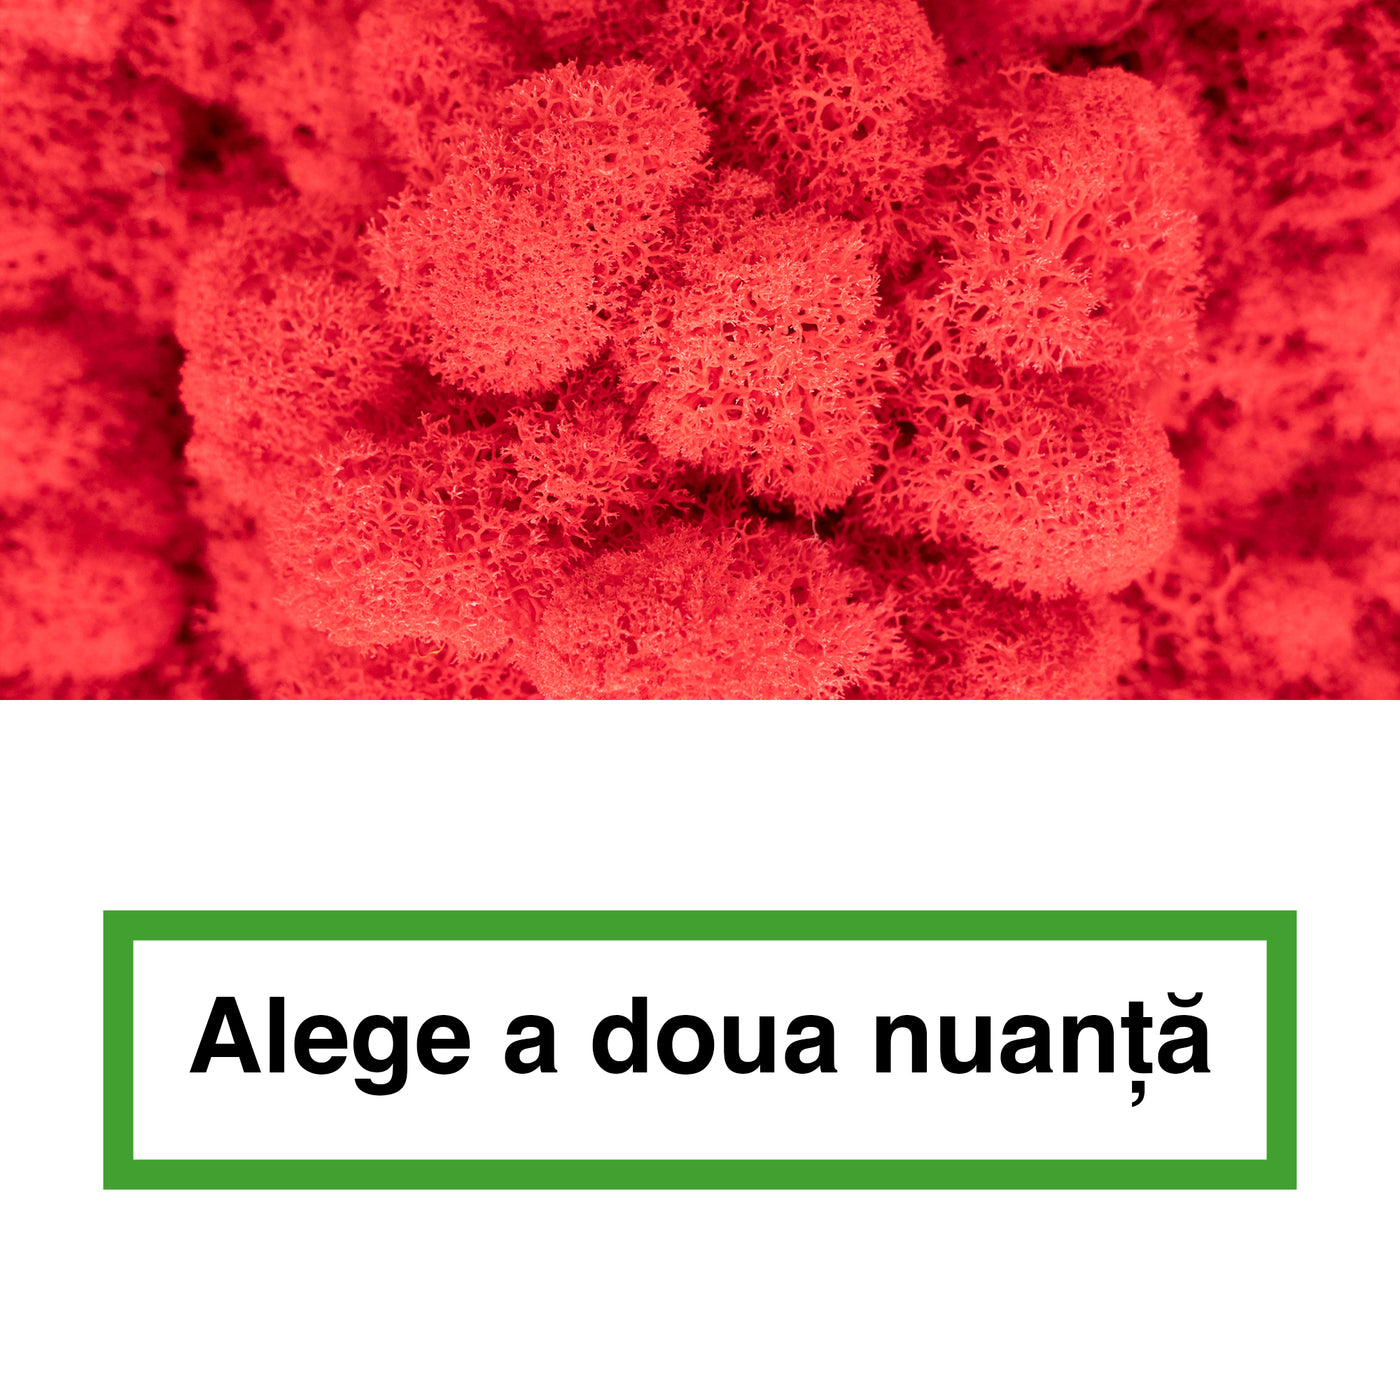 Licheni curatati si fara radacina in 2 culori 500g NET, calitate ULTRA PREMIUM, rosu watermelon RR40 cu